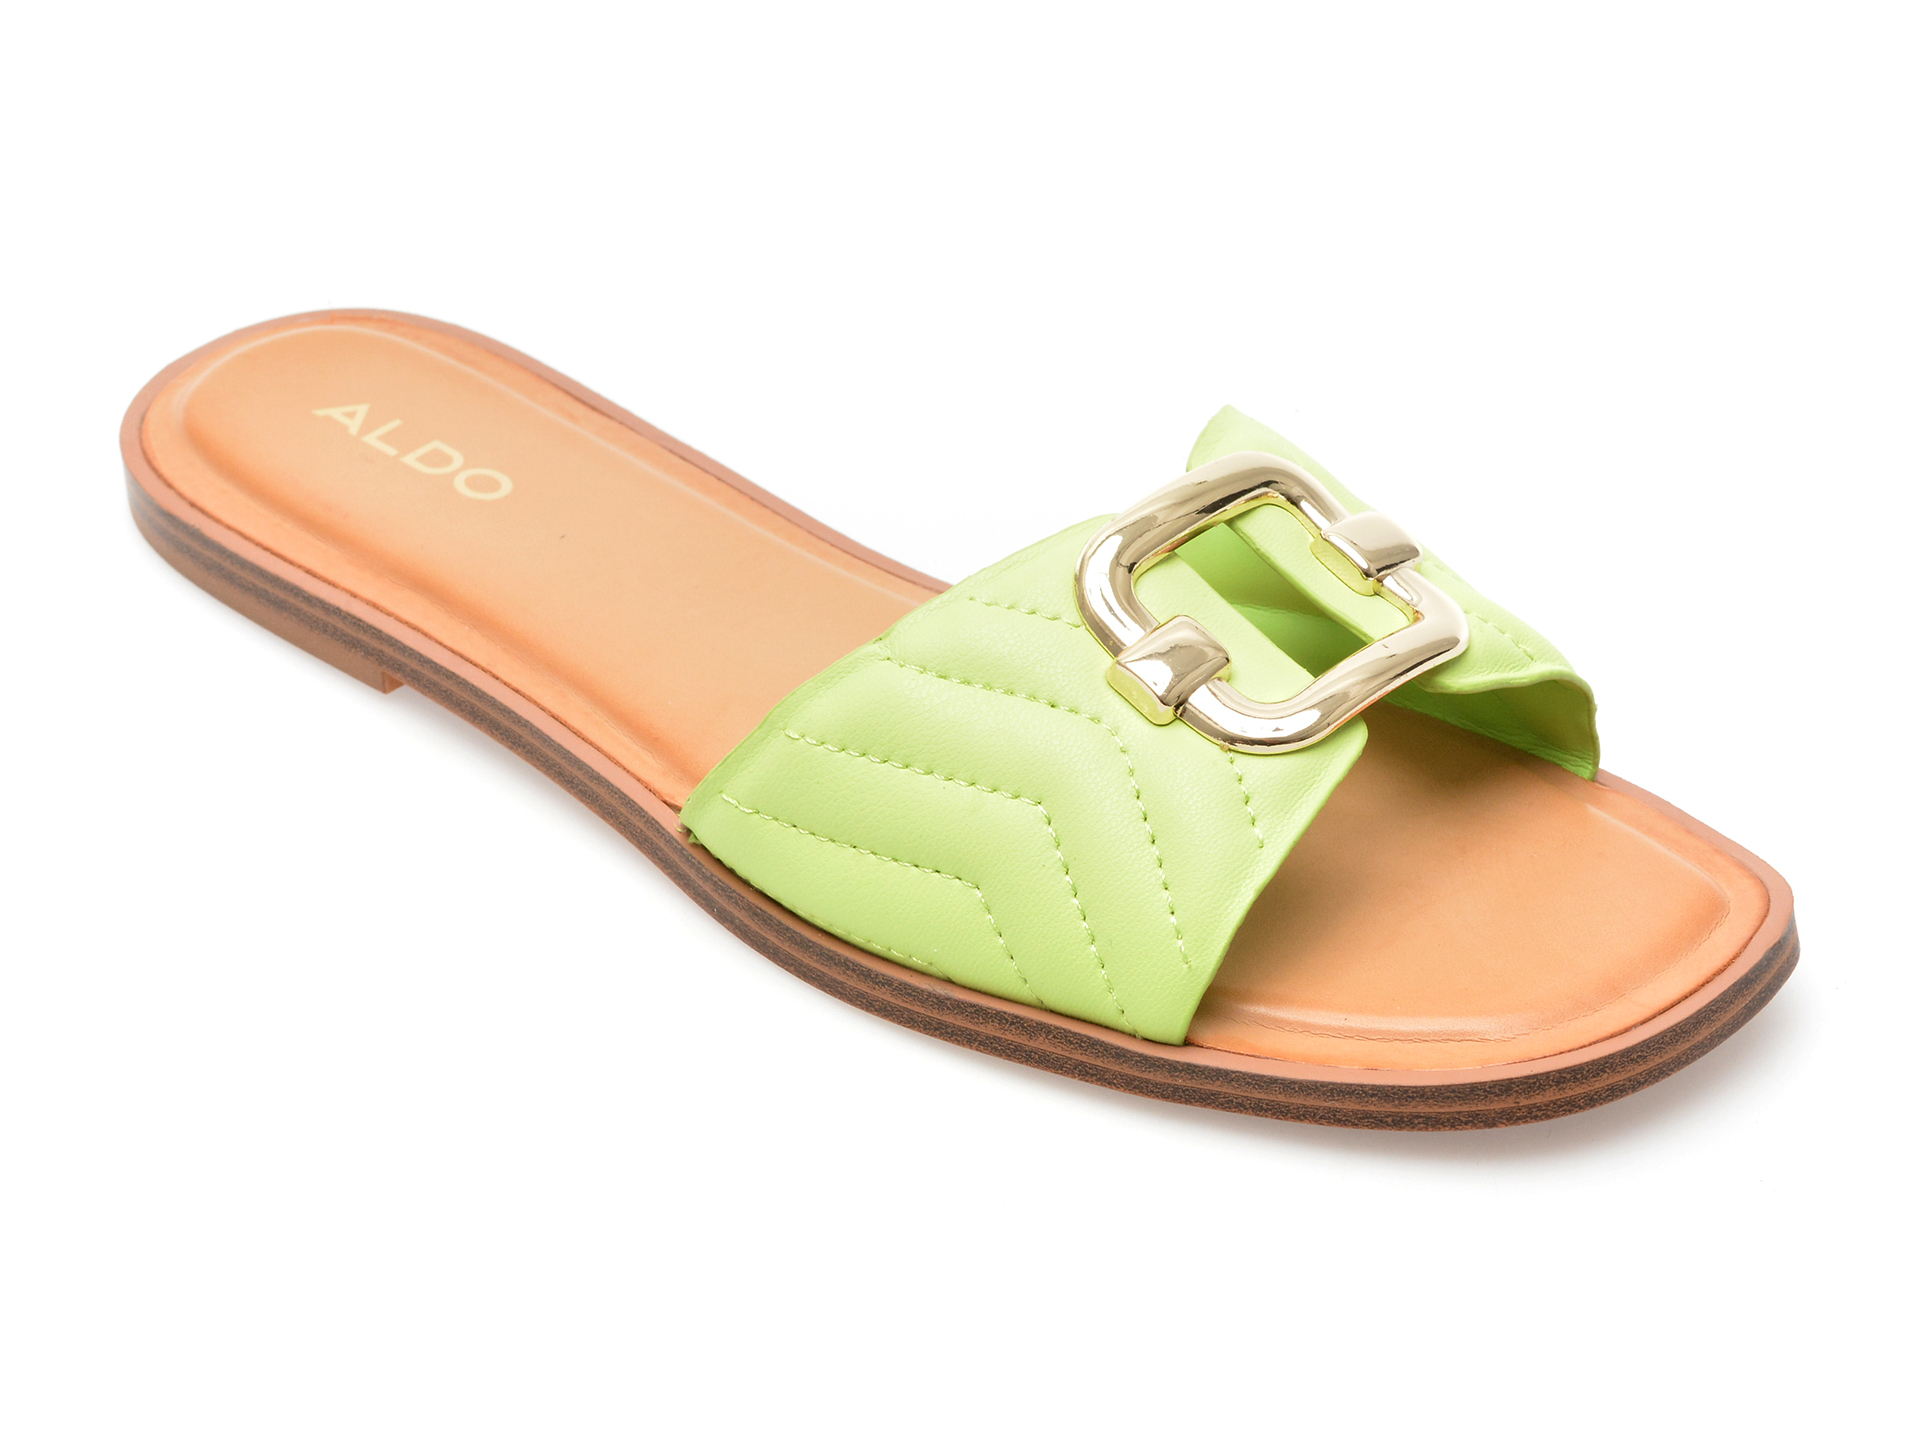 Papuci ALDO verzi, QELAJAR330, din piele ecologica femei 2023-03-21